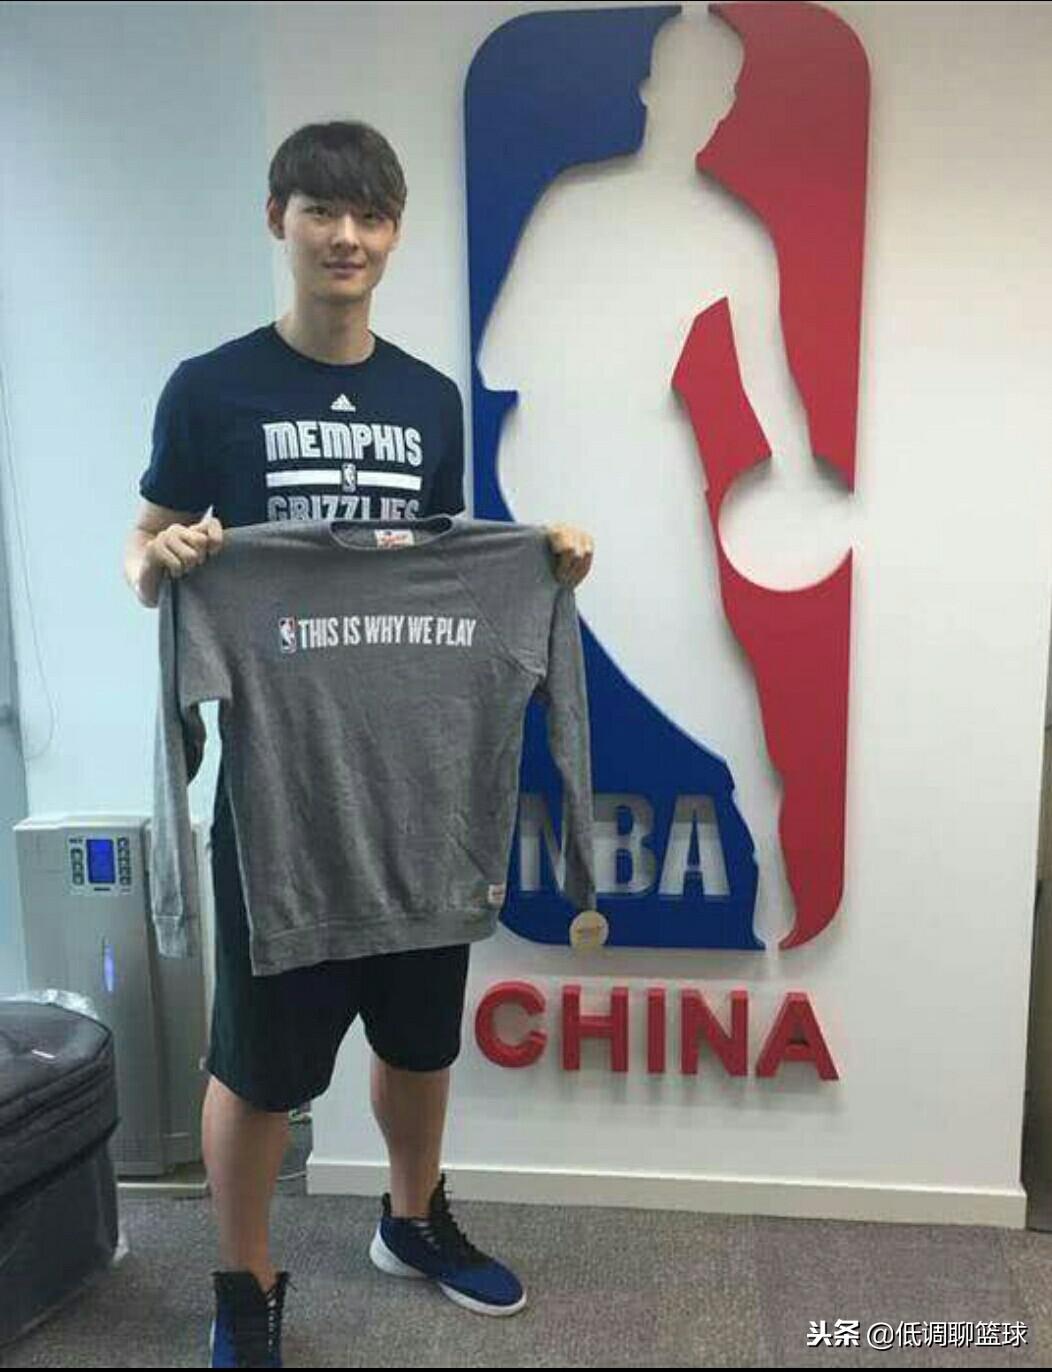 2017进入nba的中国球员 进入NBA中国球员(17)